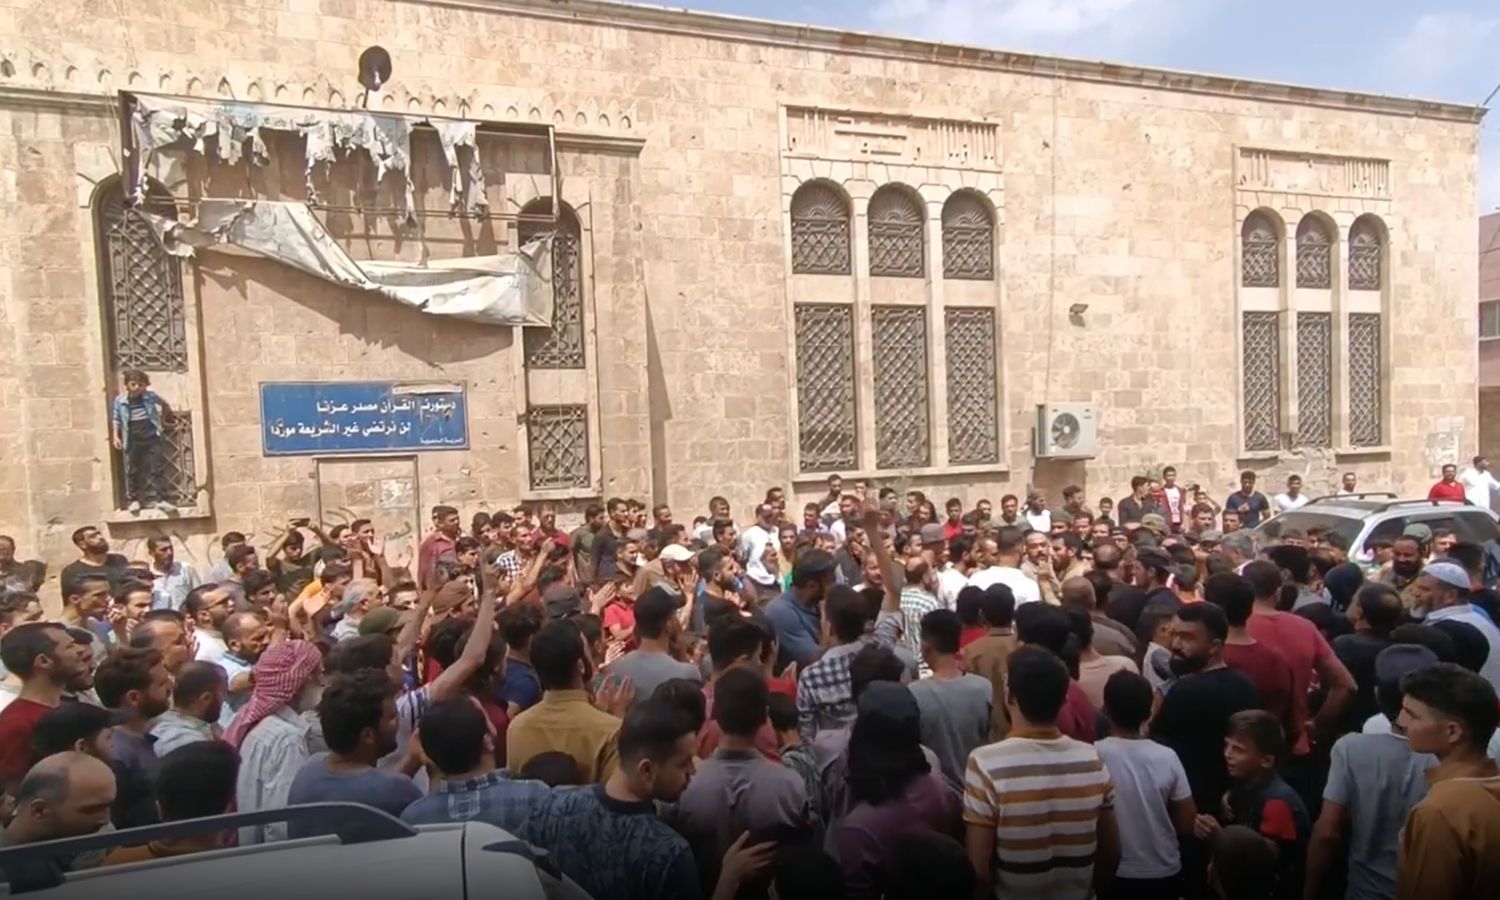 متظاهرون في مدينة الأتارب بريف حلب الغربي يطالبون بالإفراج عن أحد المعتقلين في سجون "تحرير الشام"- 2 من أيلول 2022 (مكتب الأتارب الإعلامي)